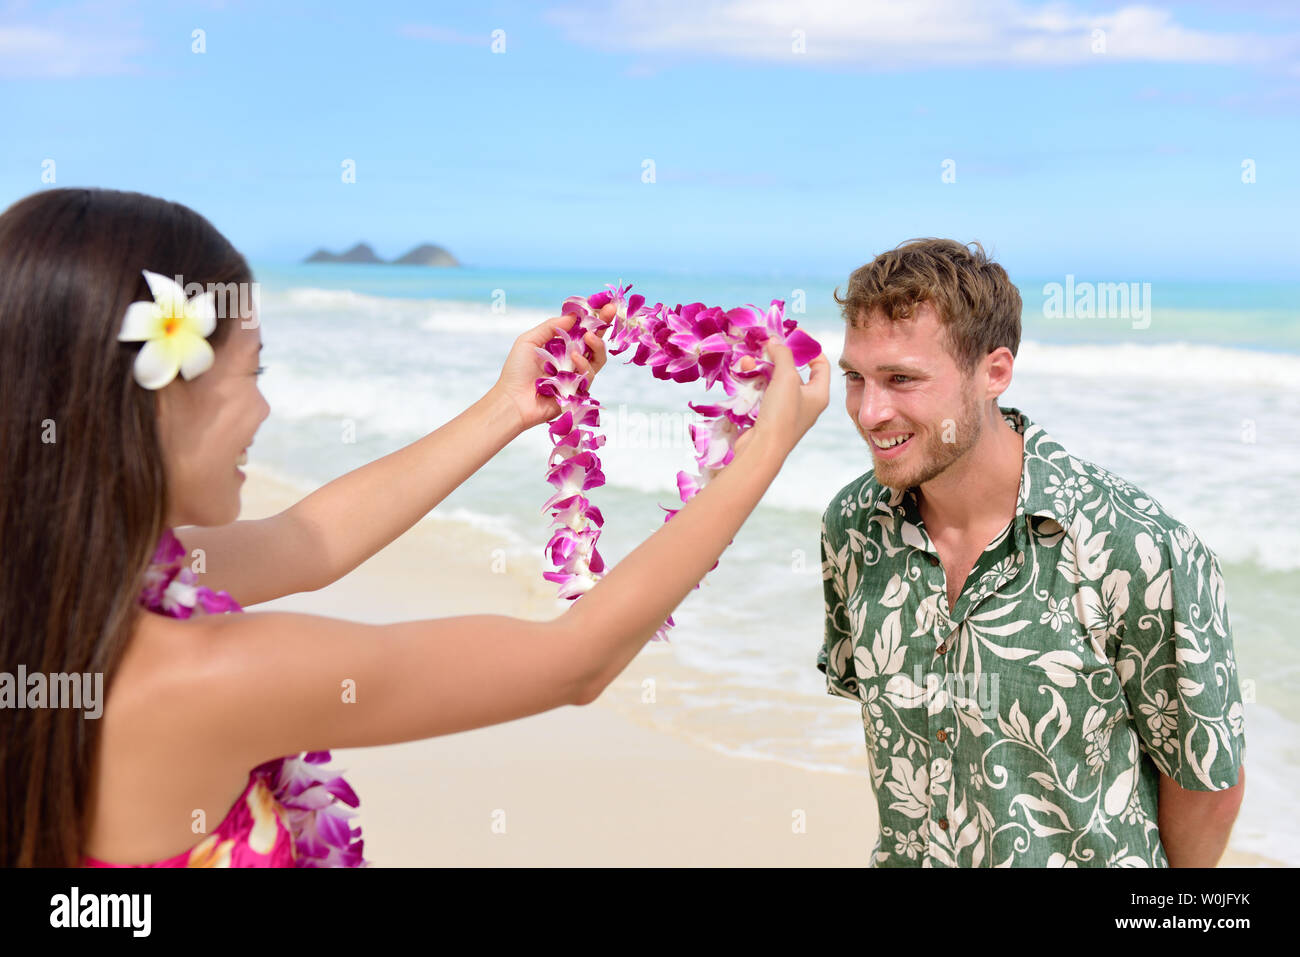 Woman Hawaii lei guirlande d'orchidées rose tourisme Bienvenue sur plage  hawaïenne. Portrait d'une culture polynésienne tradition de donner un collier  de fleurs à un client comme un geste de bienvenue Photo Stock -